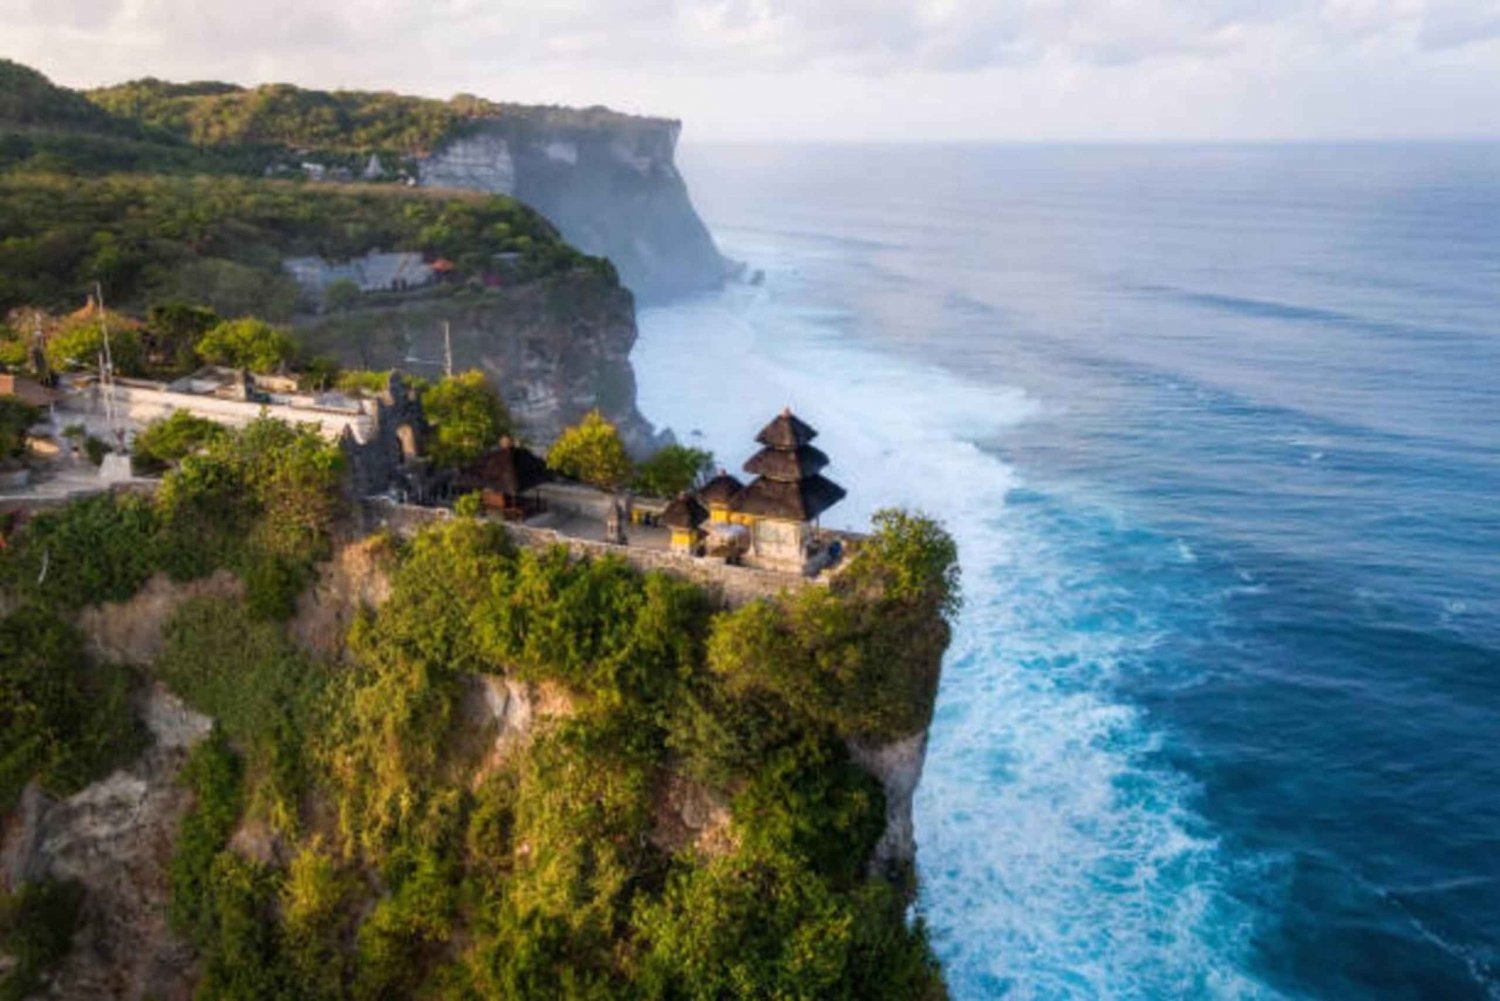 Sud di Bali: Tour di un giorno con tempio e spiagge al tramonto